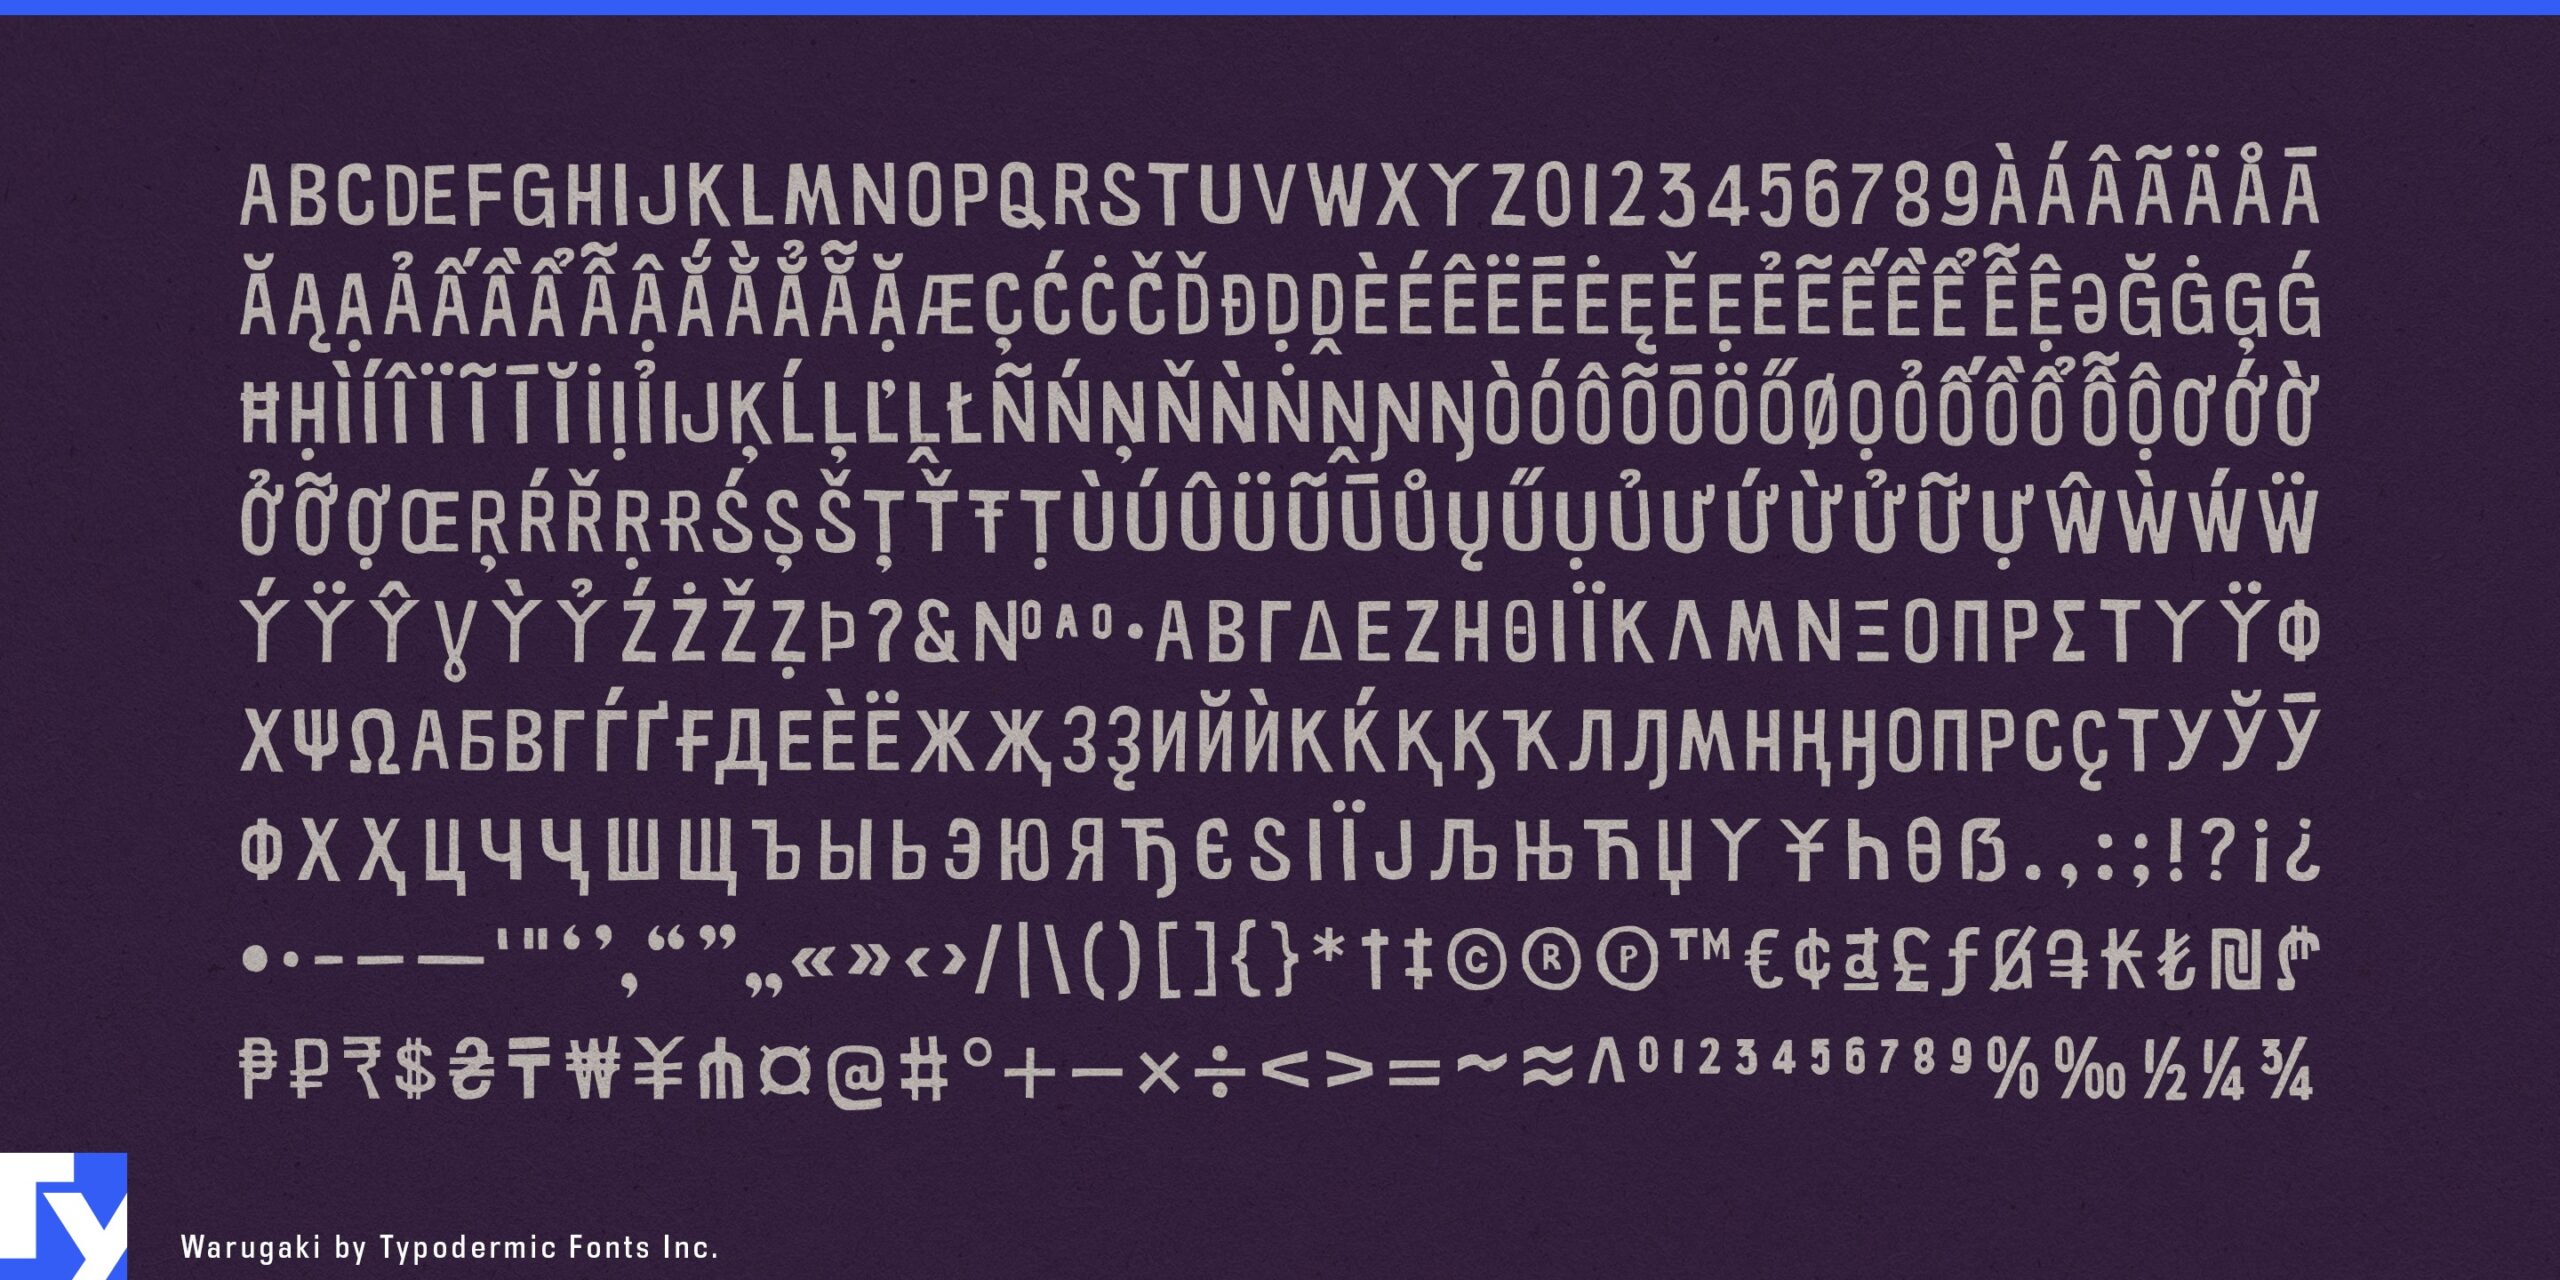 Organic Authenticity: Warugaki Typeface's Meticulous Craftsmanship